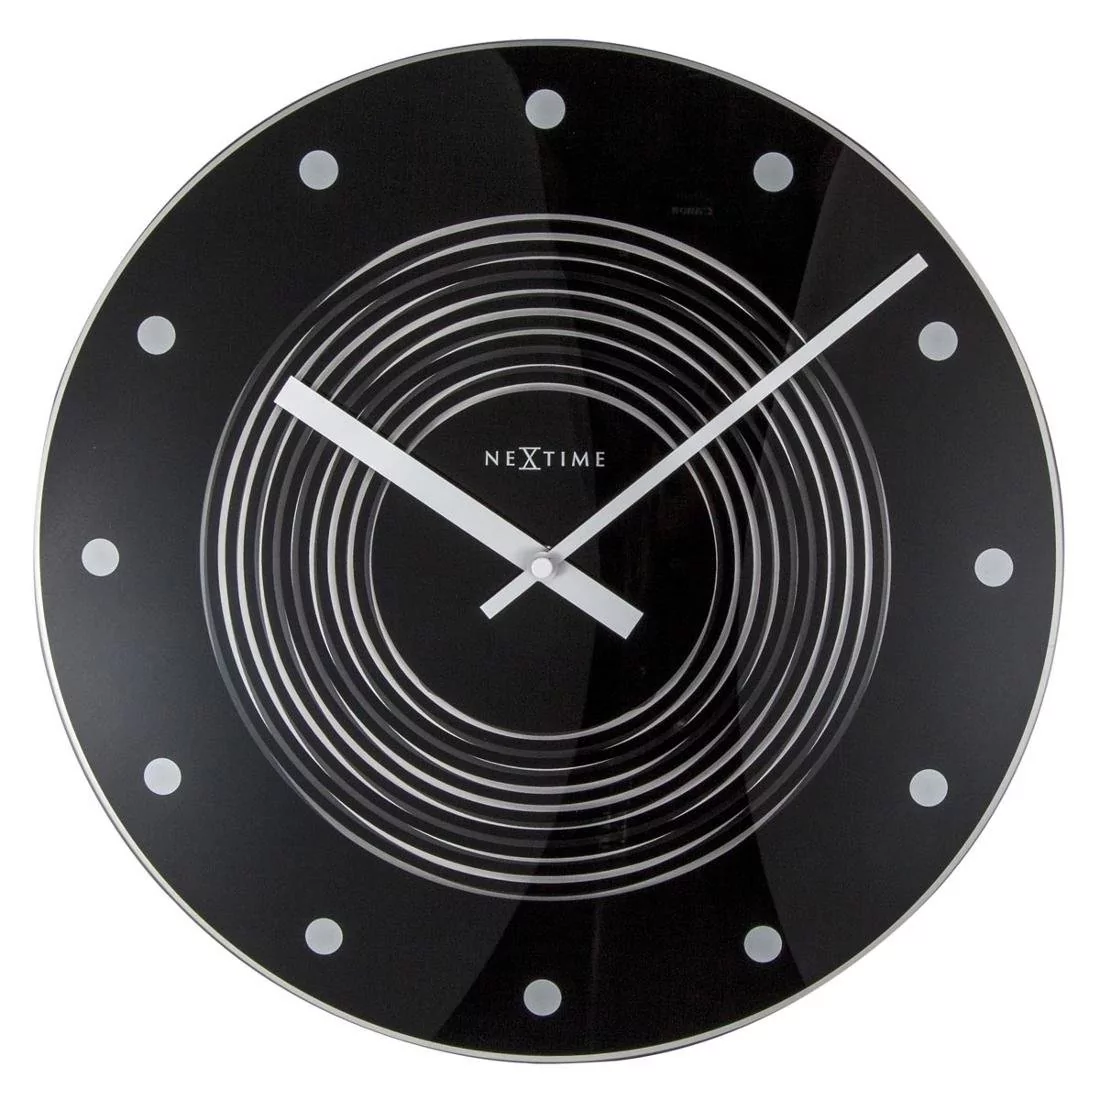 Nextime Zegar ścienny Concentric, czarny, 35x3,5 cm